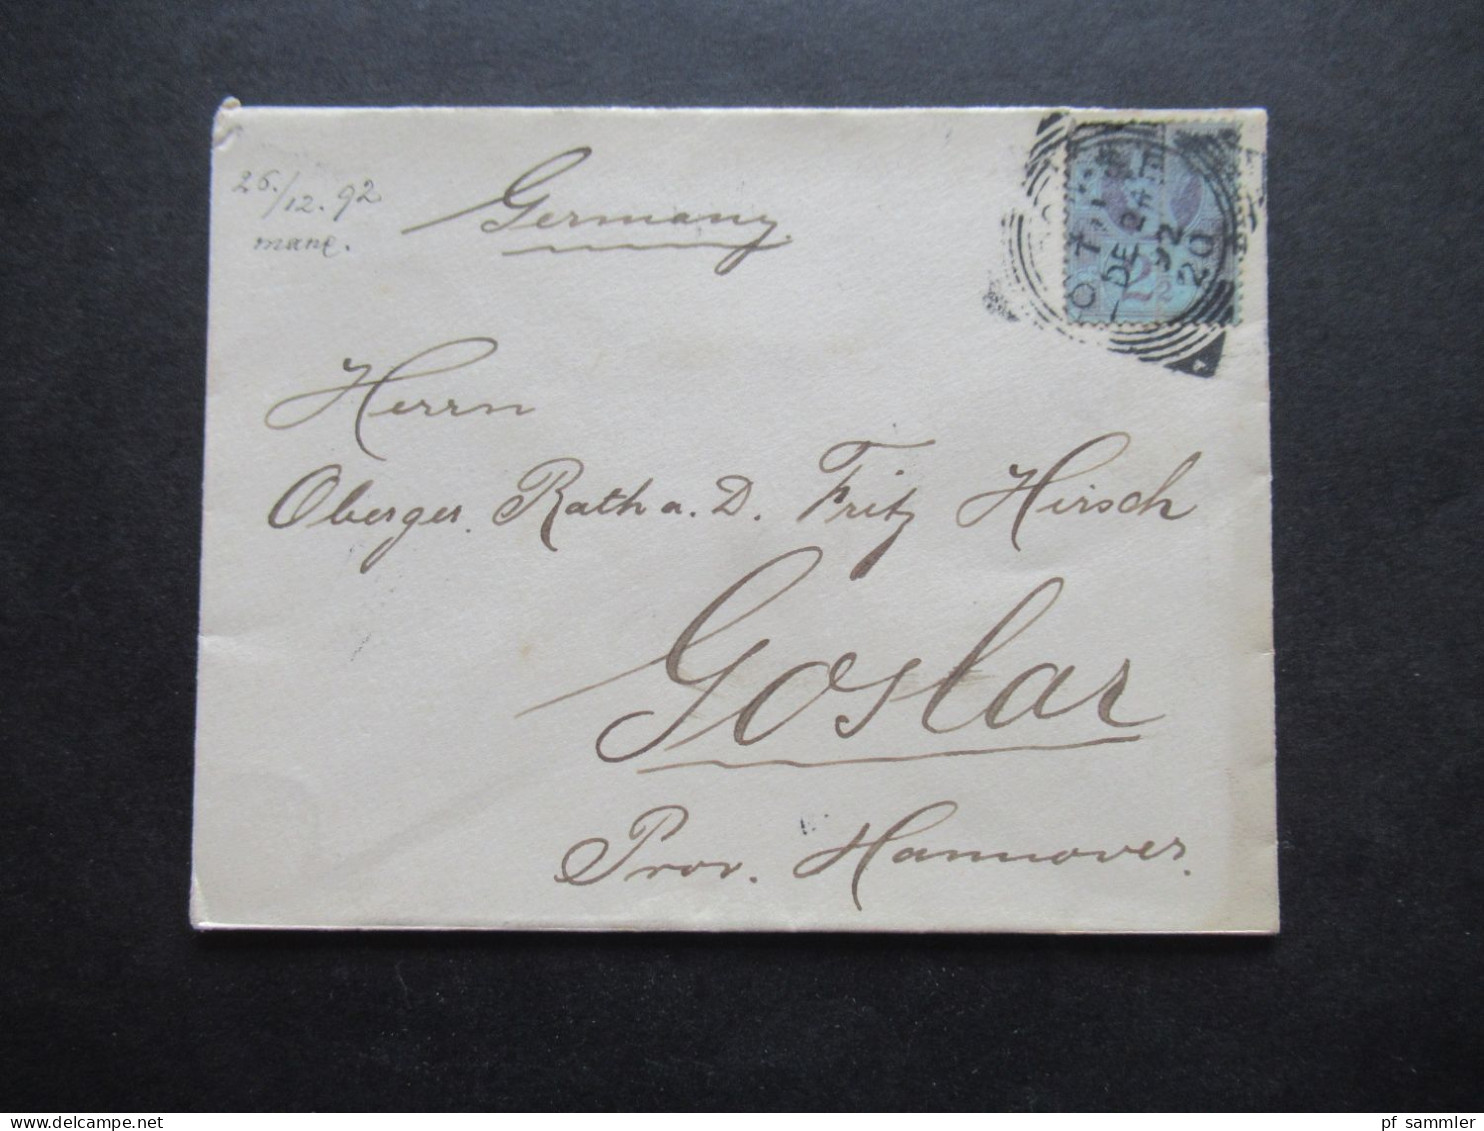 GB 1892 Auslandsbrief Nach Goslar Prov. Hannover Mit Ank. Stempel Und Mit 2 1/2d Marke - Storia Postale